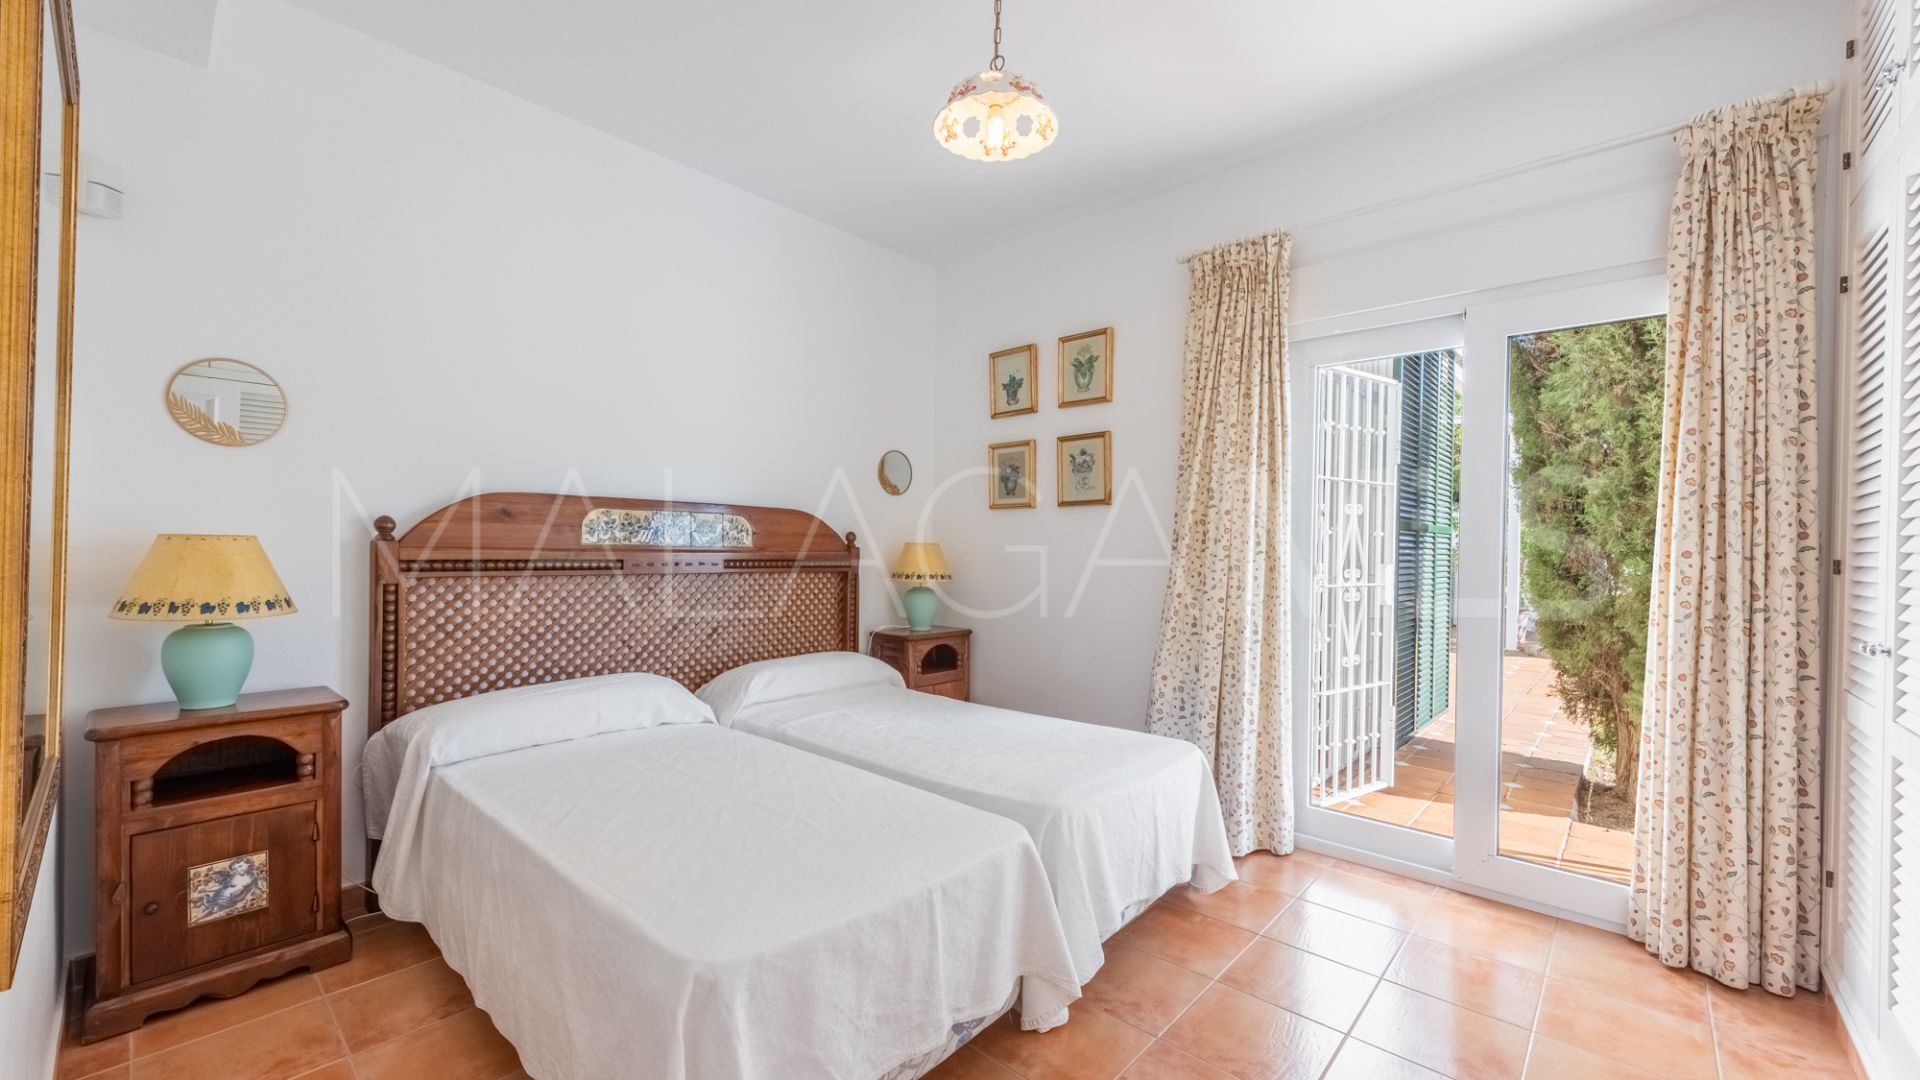 For sale villa with 5 bedrooms in El Presidente